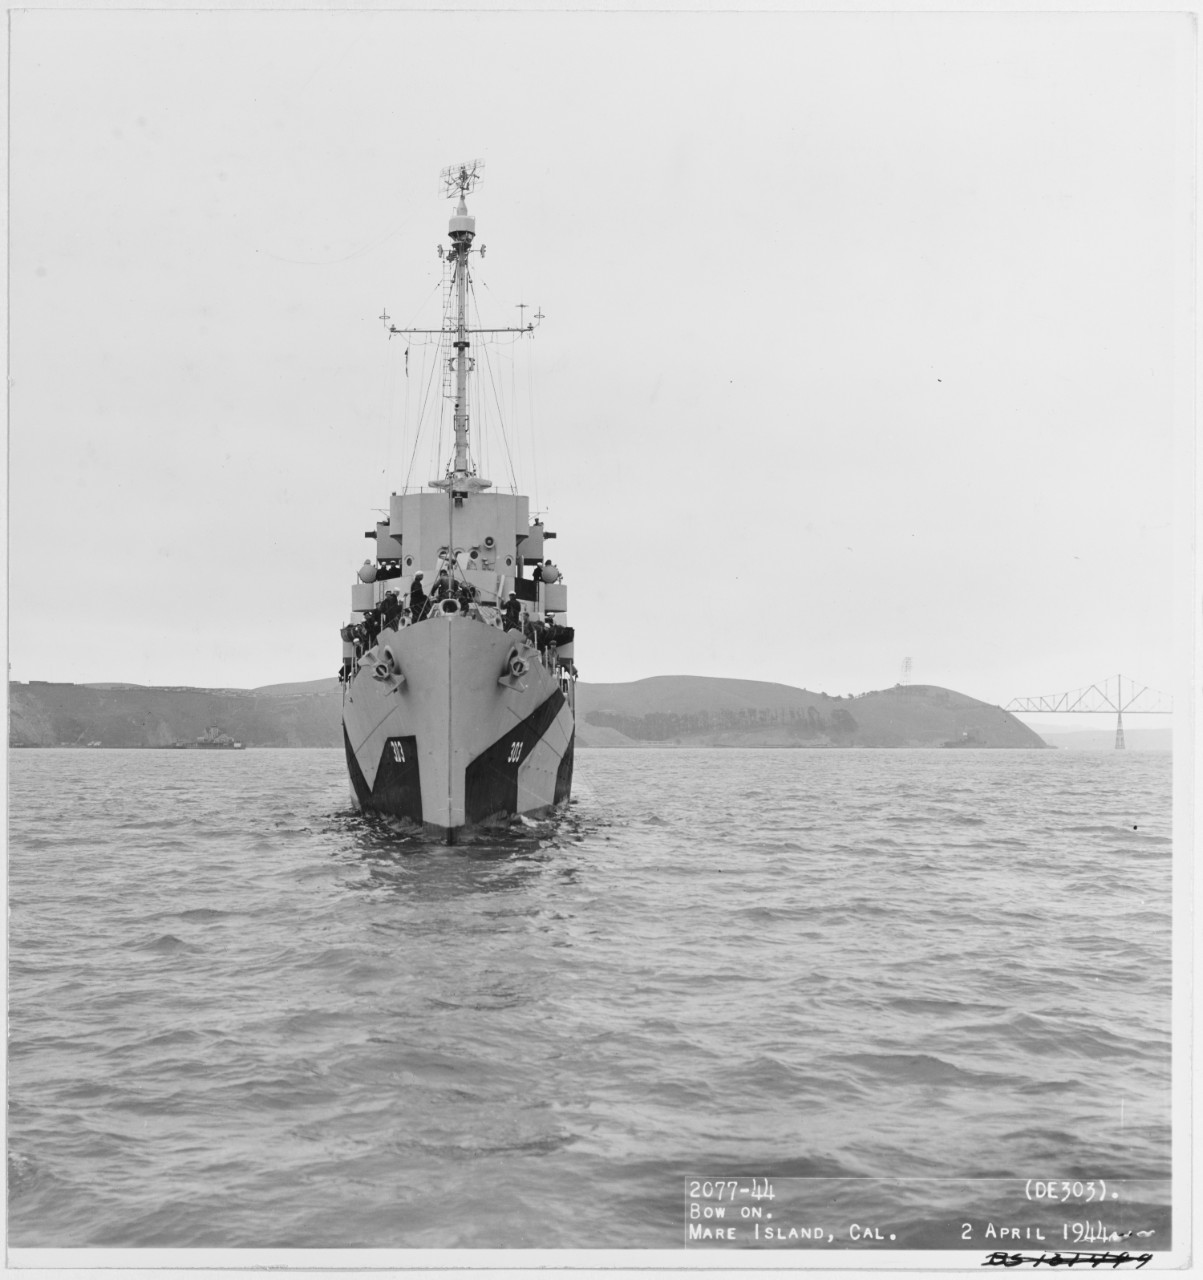 USS CROWLEY (DE-303)